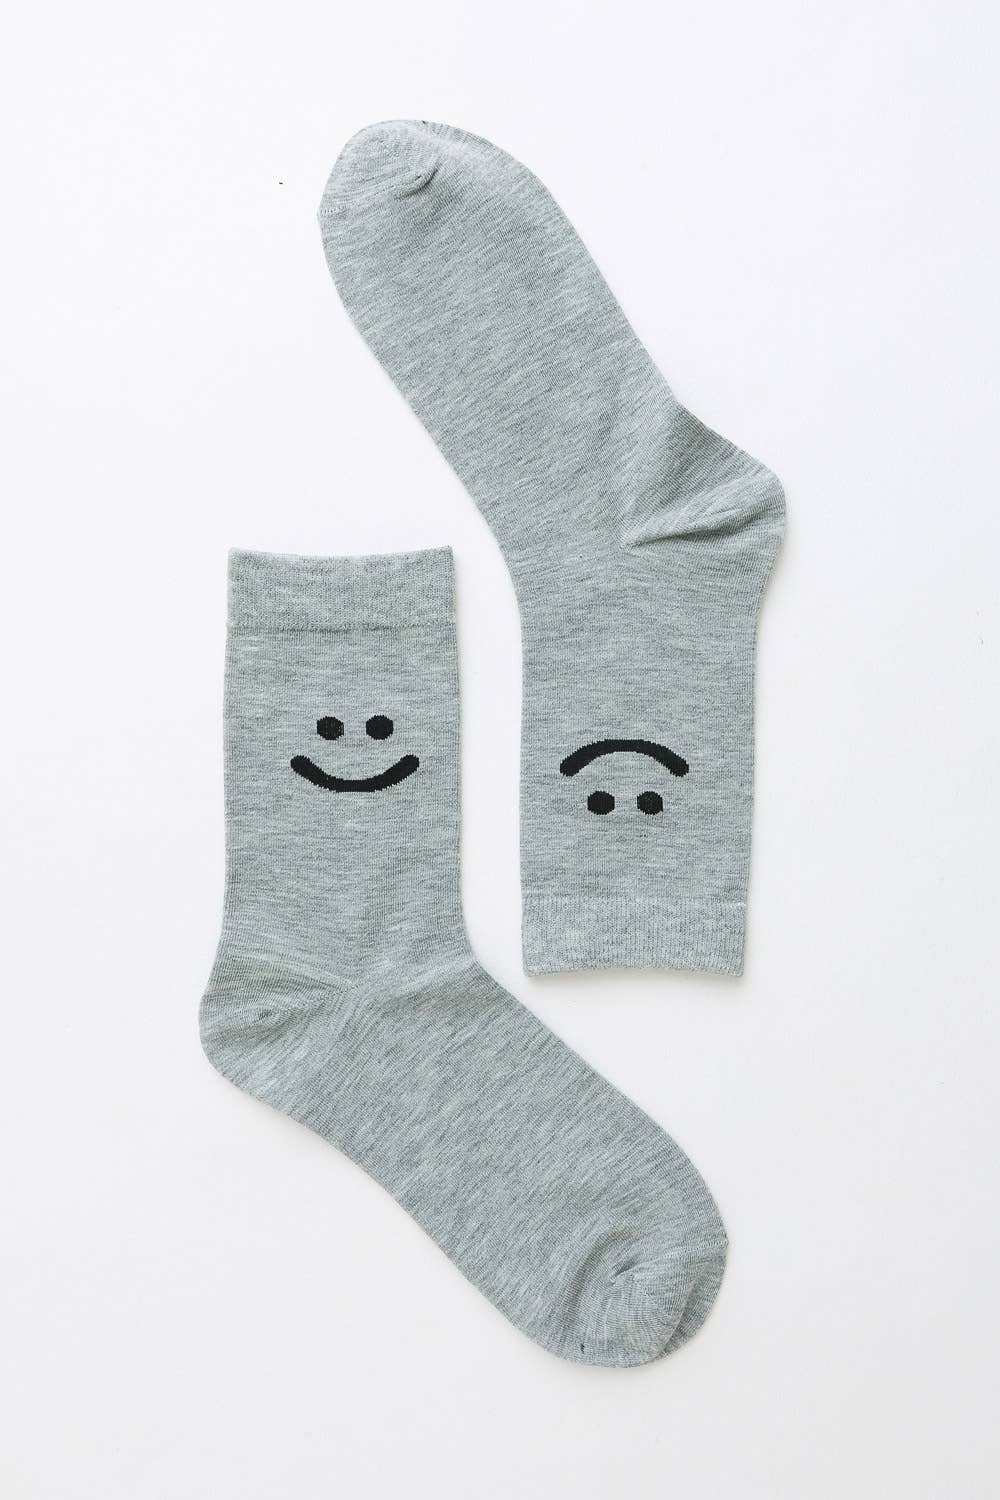 Smiley Face Crew Socks: Black